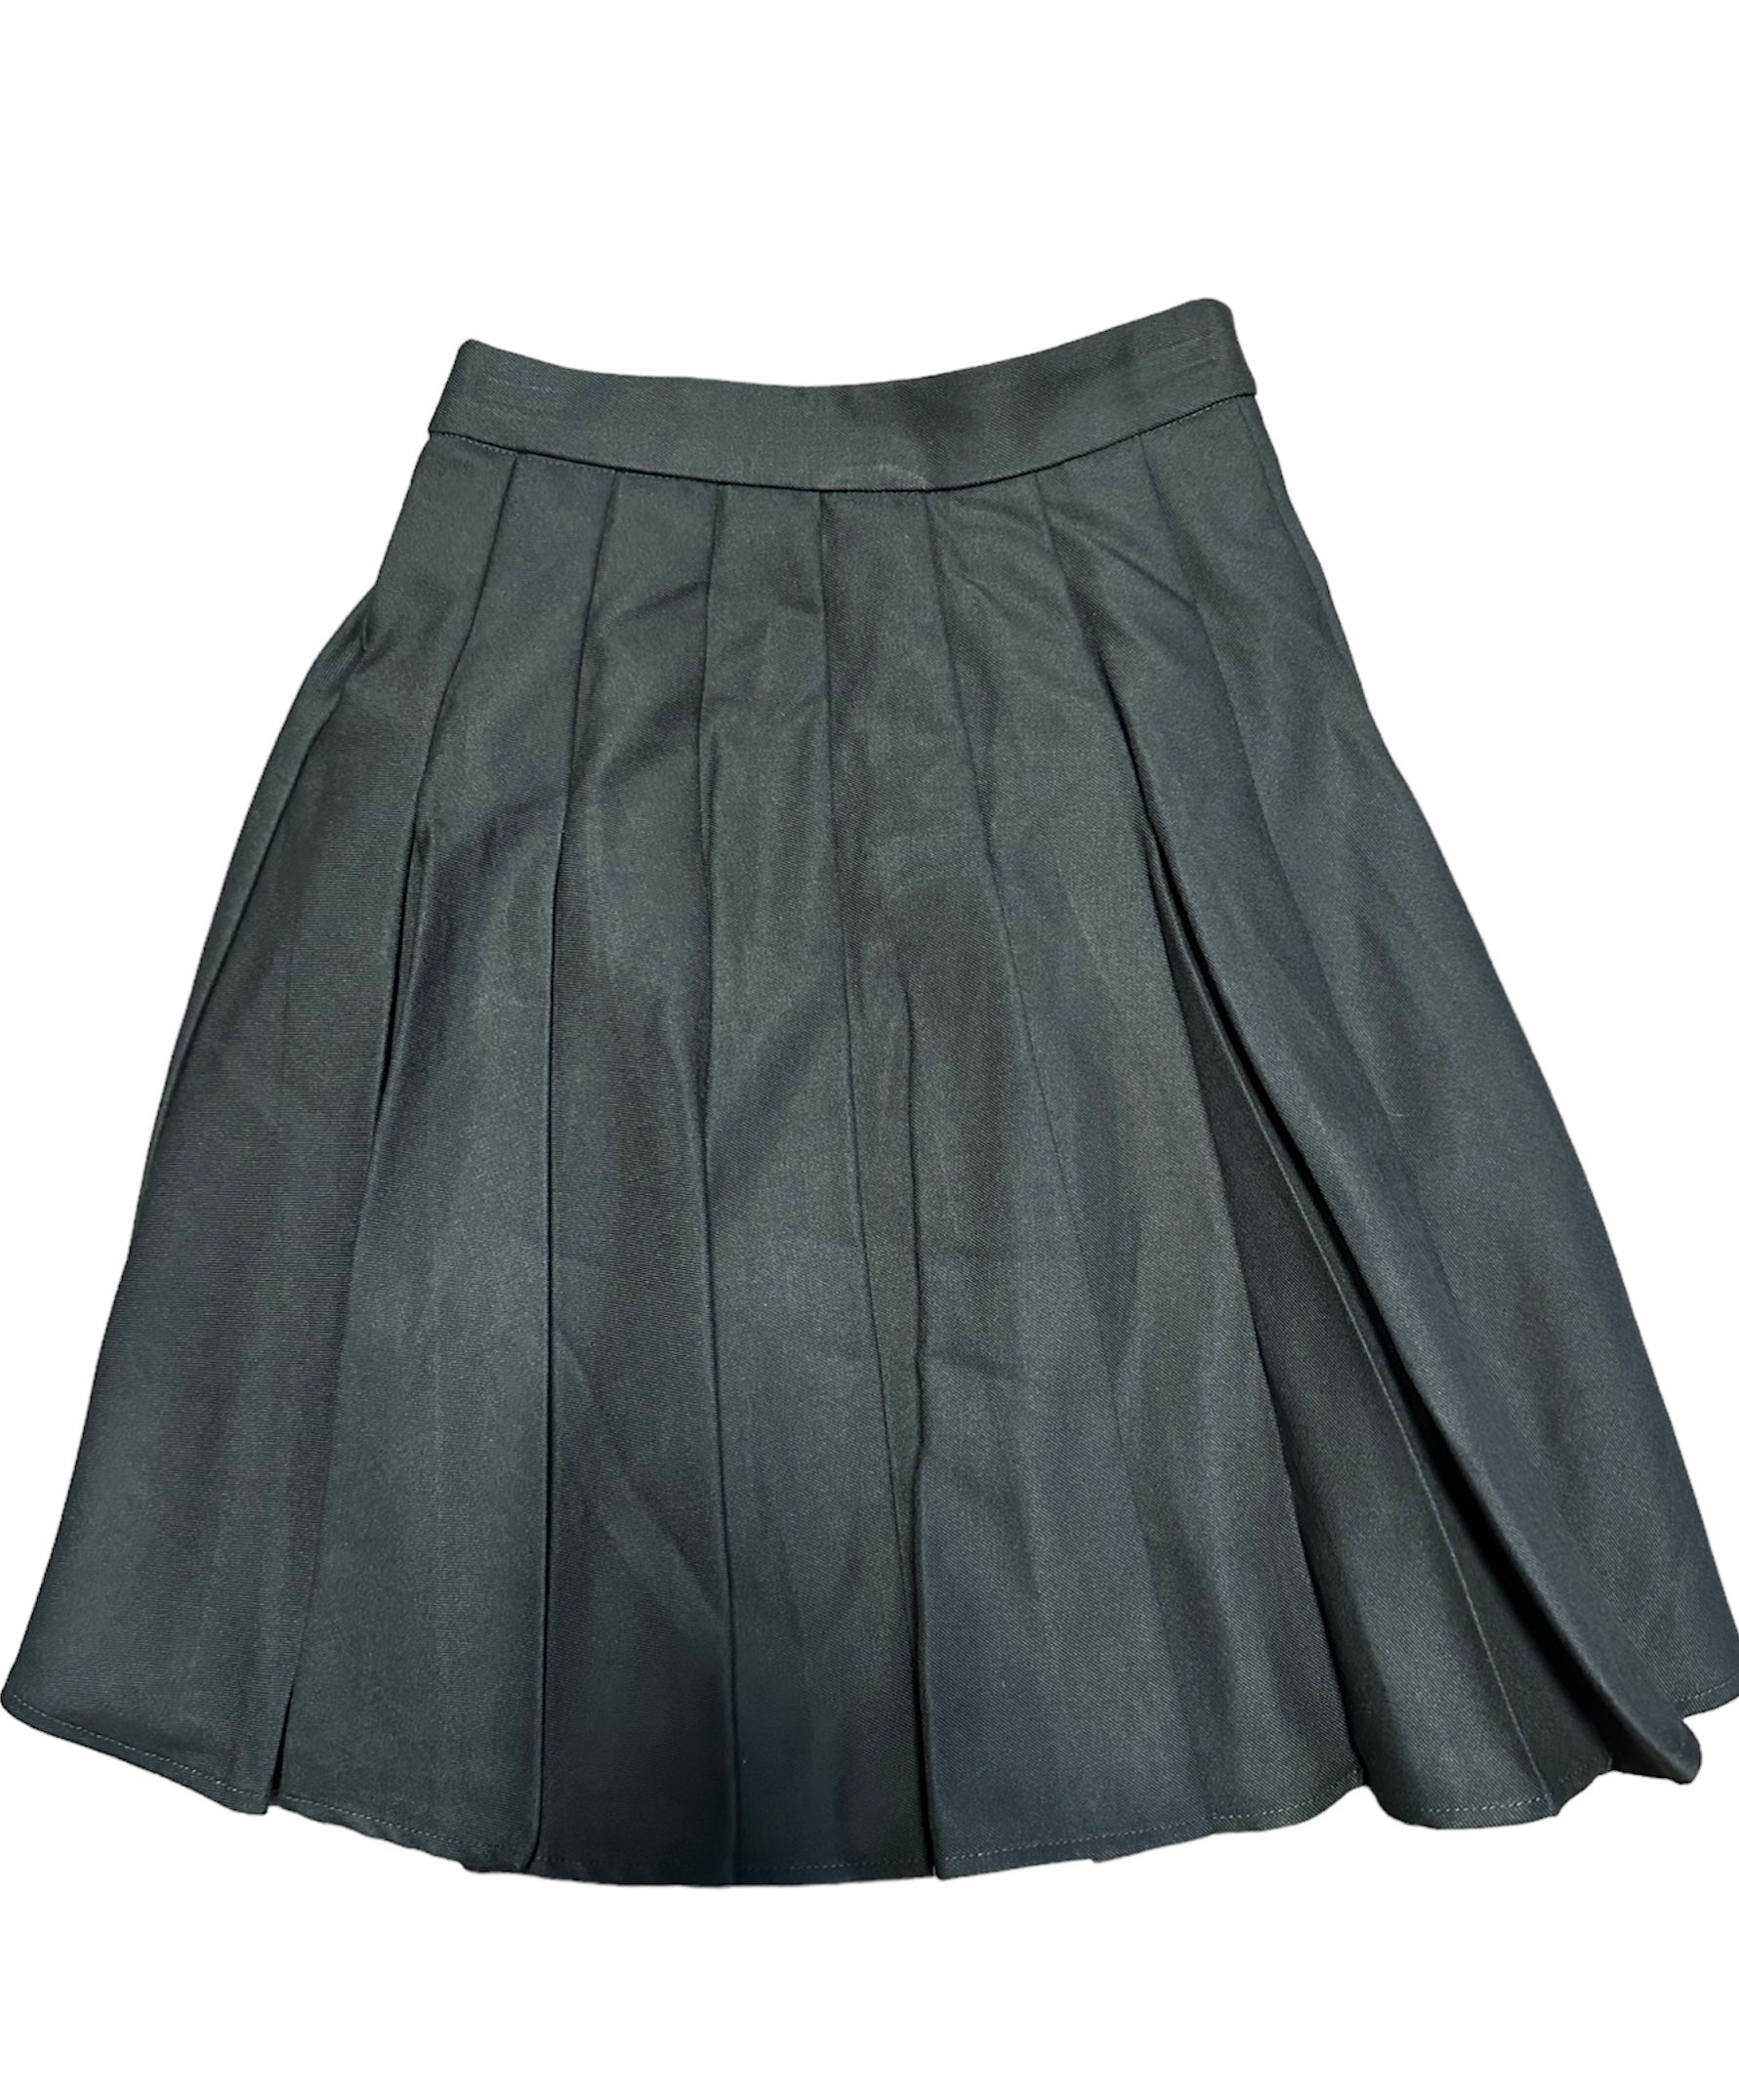 Belmont Skirt